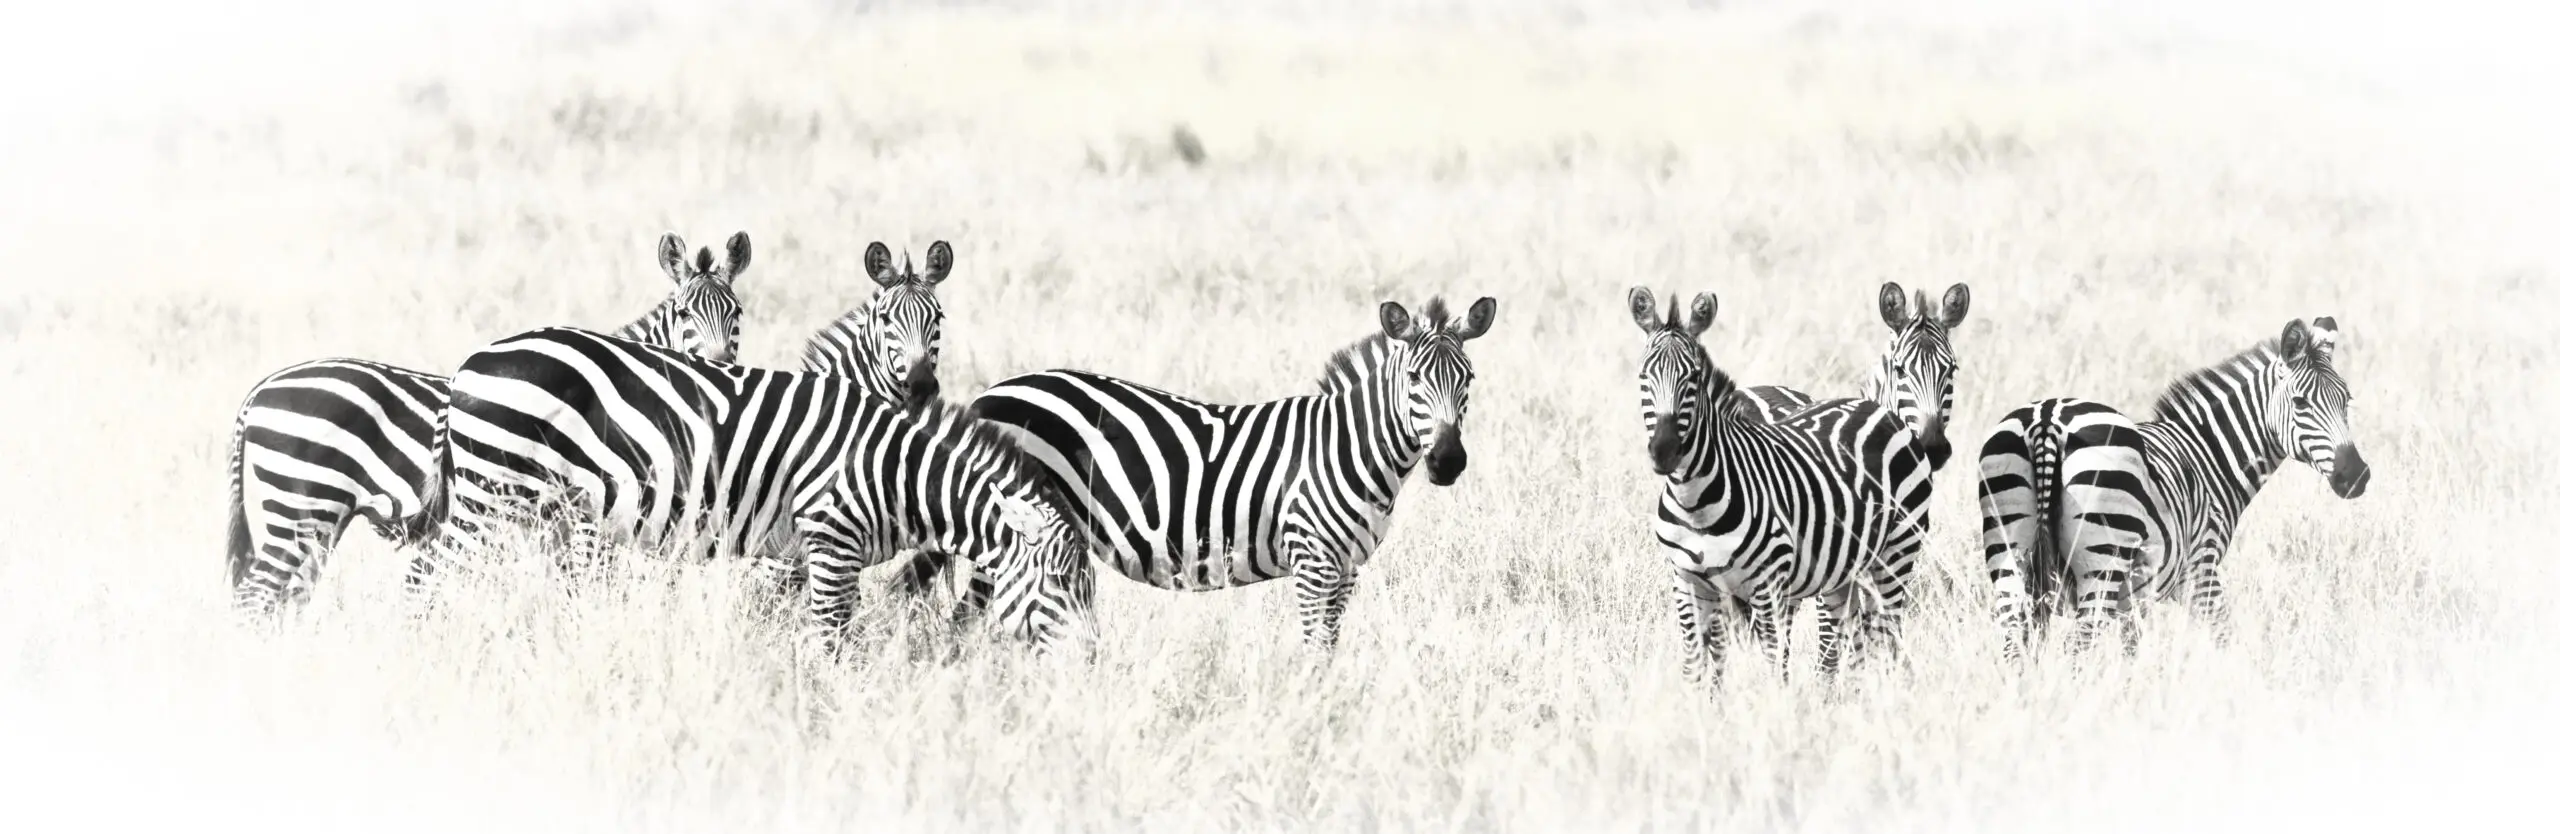 Wandbild (3148) Zebra Crossing präsentiert: Tiere,Natur,Landschaften,Afrika,Wildtiere,Aus Afrika,Pferde